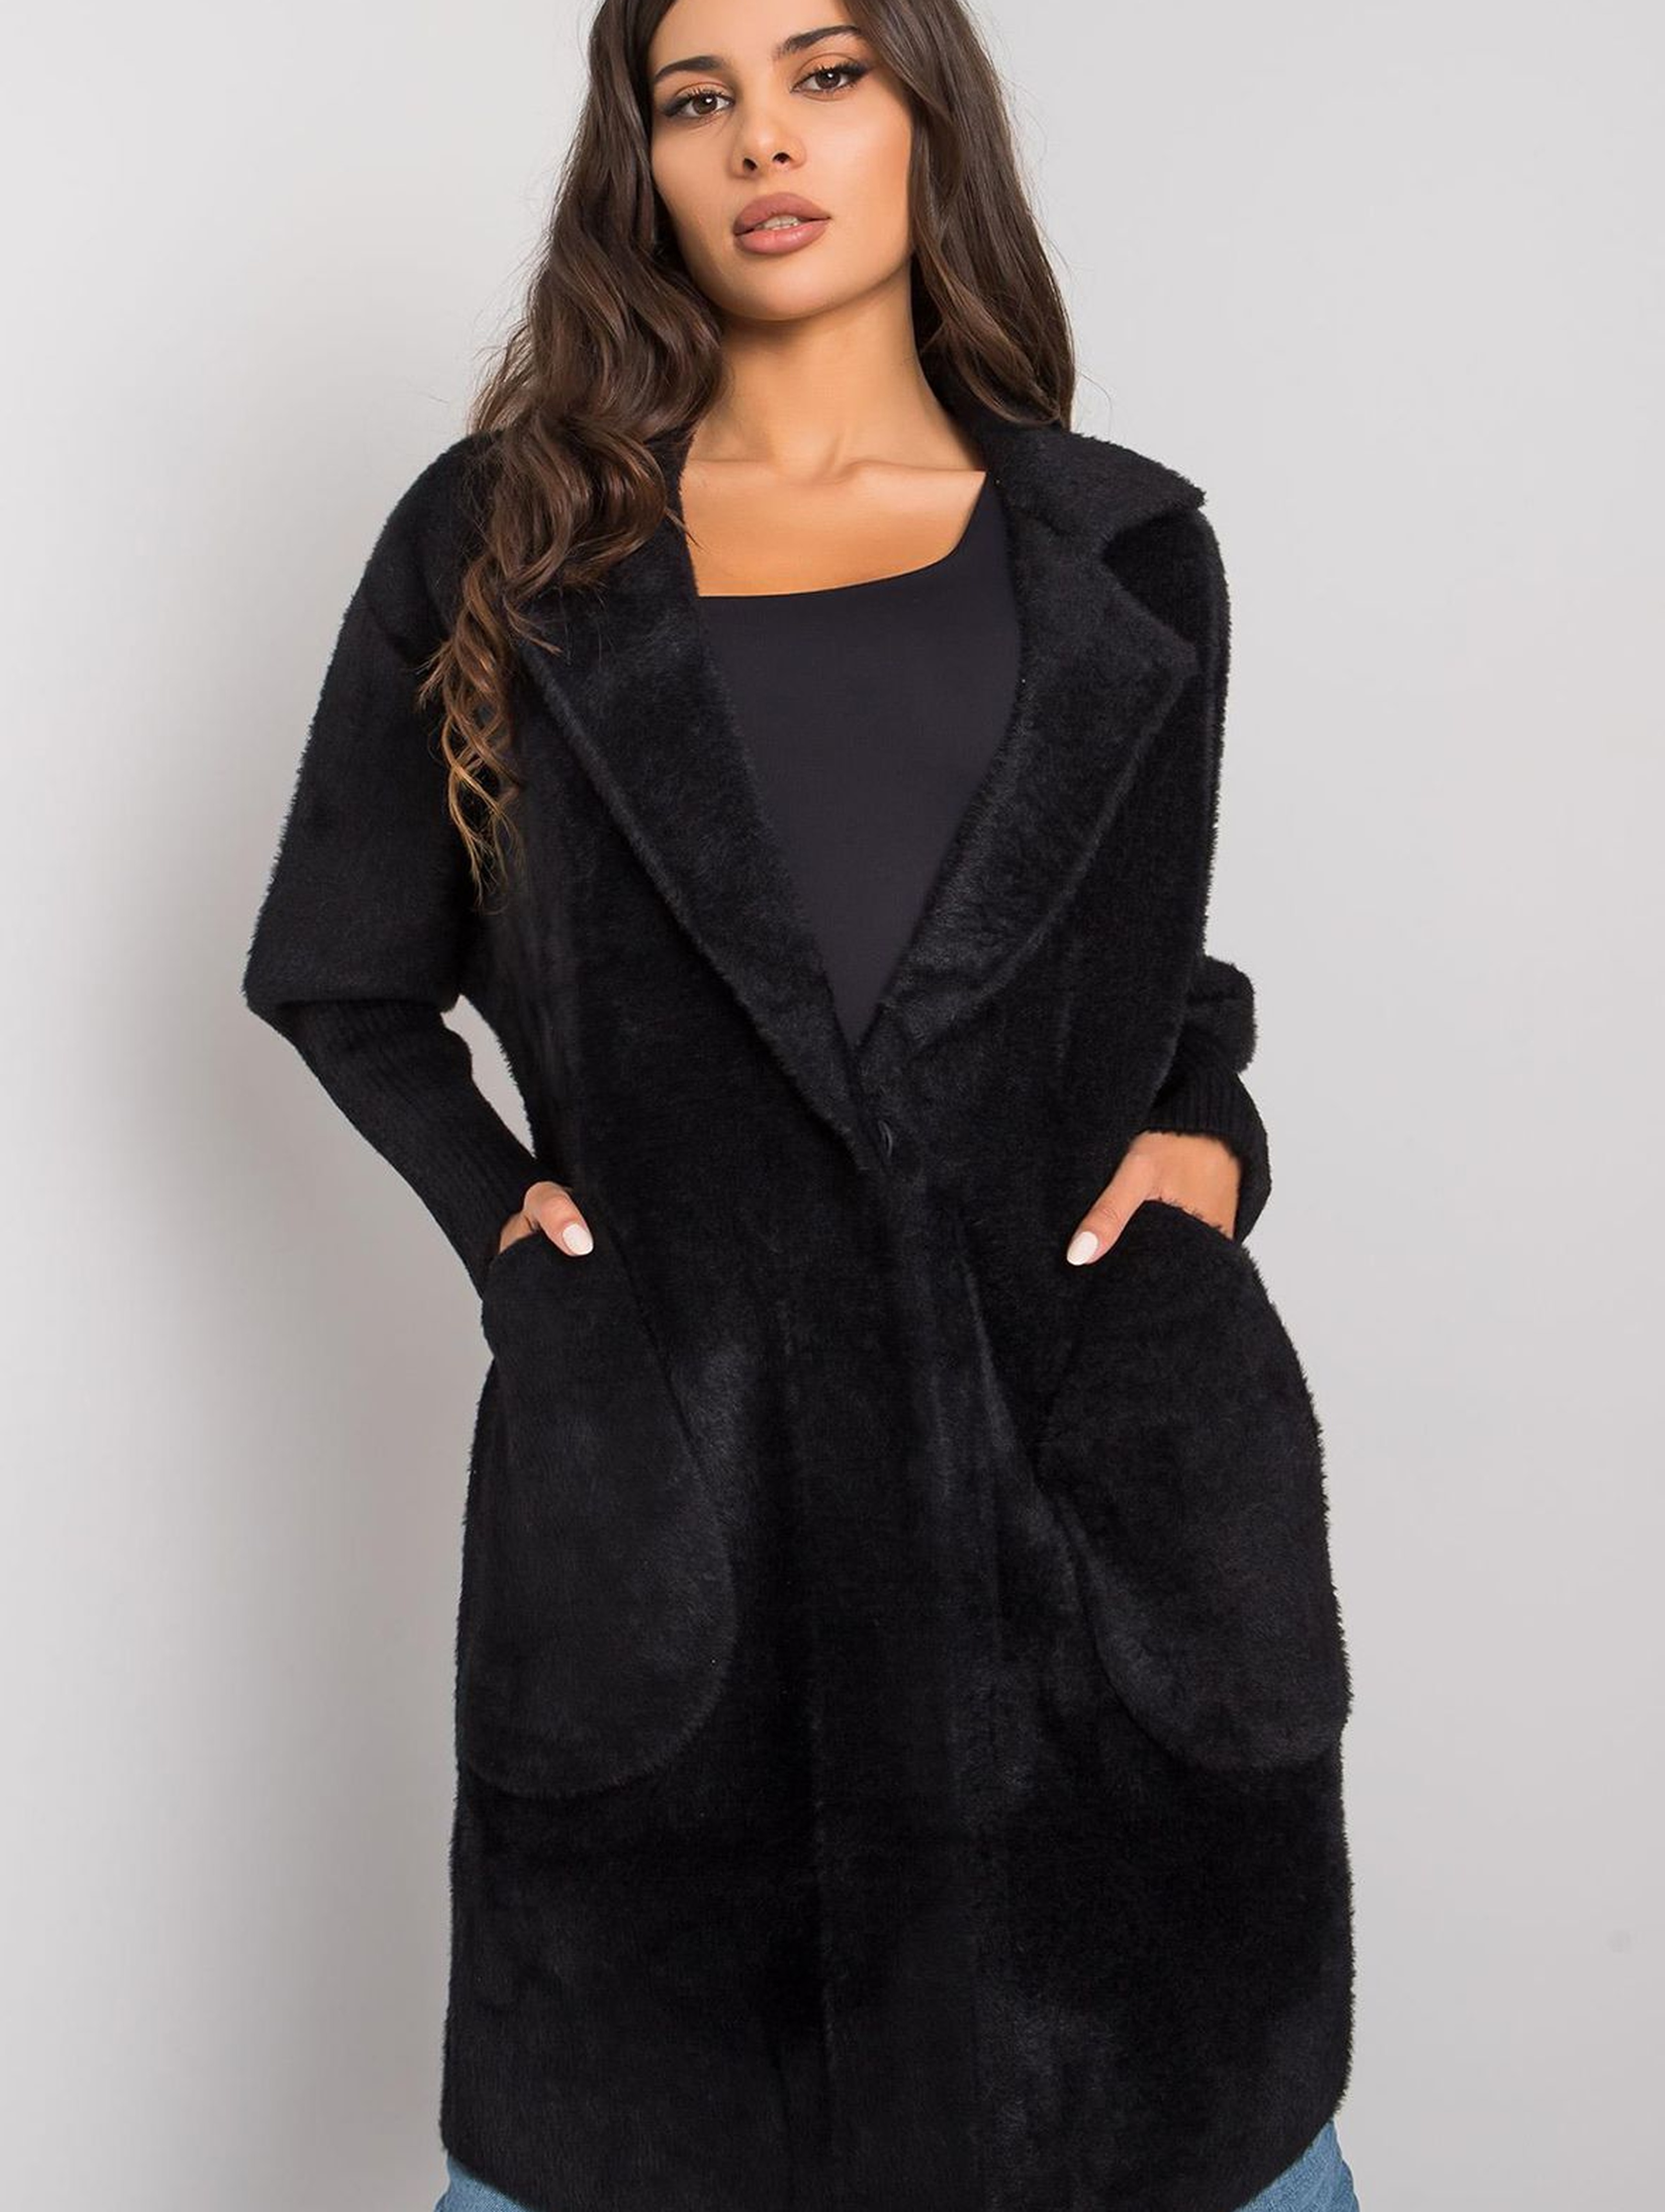 Czarny płaszcz alpaka z kieszeniami rozmiar S/M